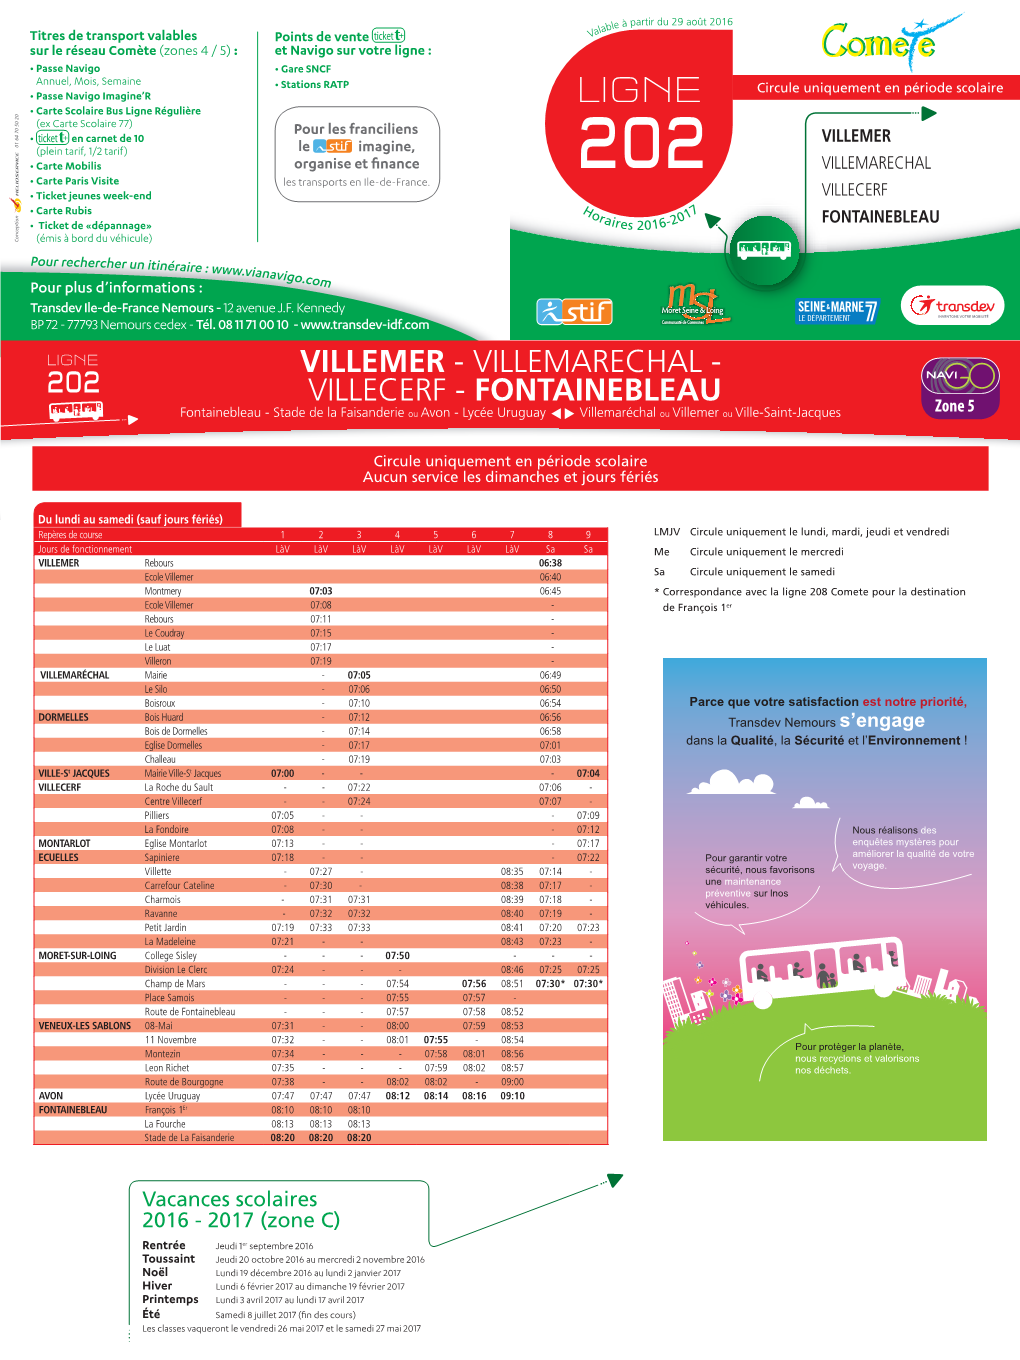 VILLEMER (Plein Tarif, 1/2 Tarif) Le Imagine, • Carte Mobilis Organise Et Finance VILLEMARECHAL • Carte Paris Visite Les Transports En Ile-De-France